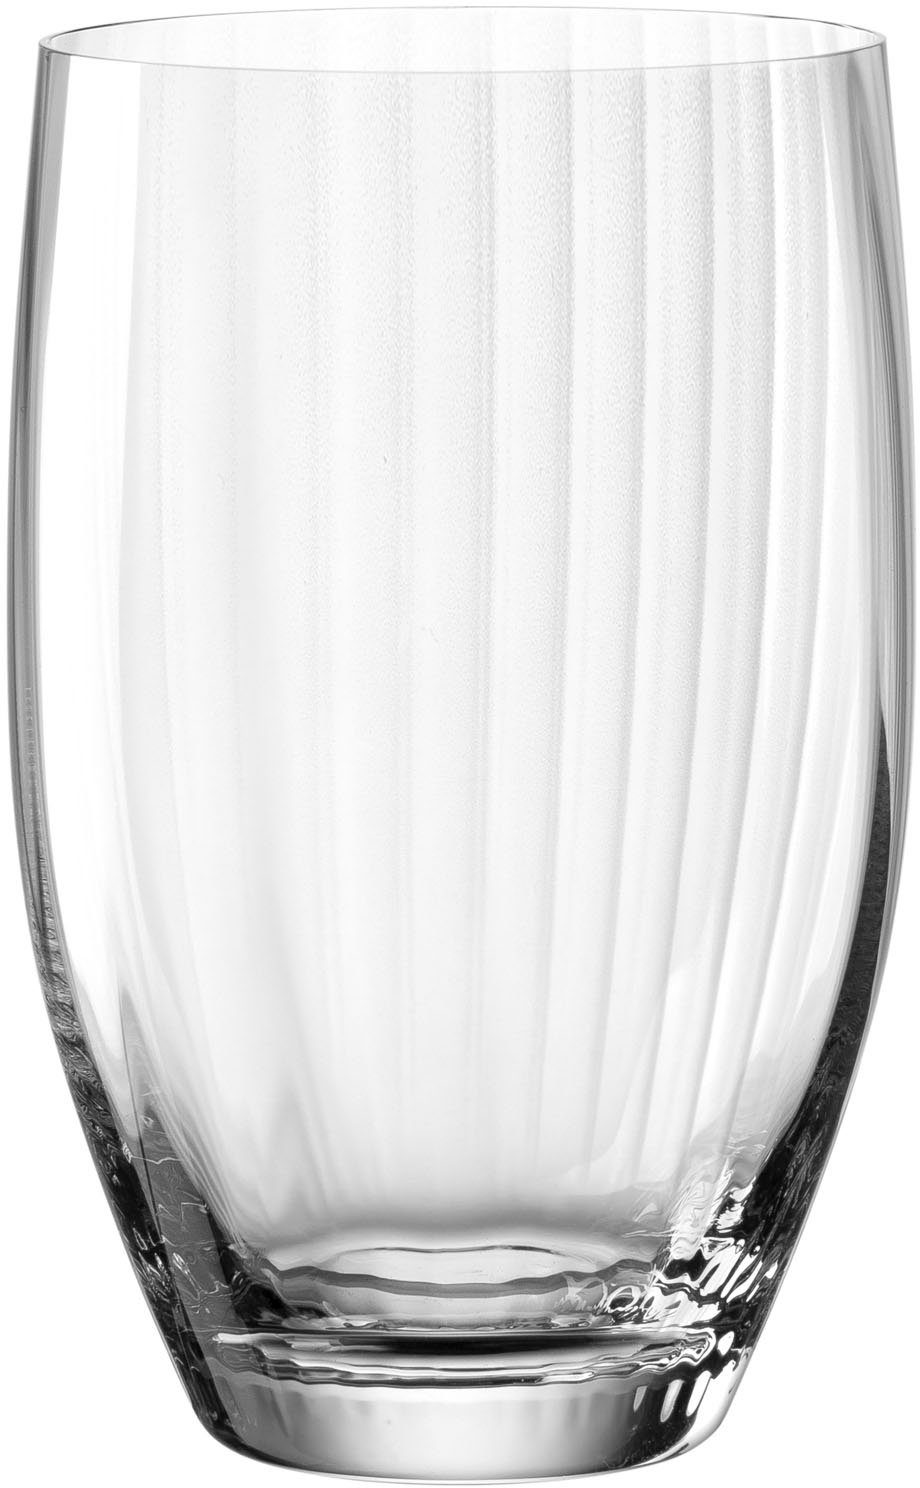 LEONARDO Longdrinkglas POESIA, Kristallglas, 460 ml, 6-teilig